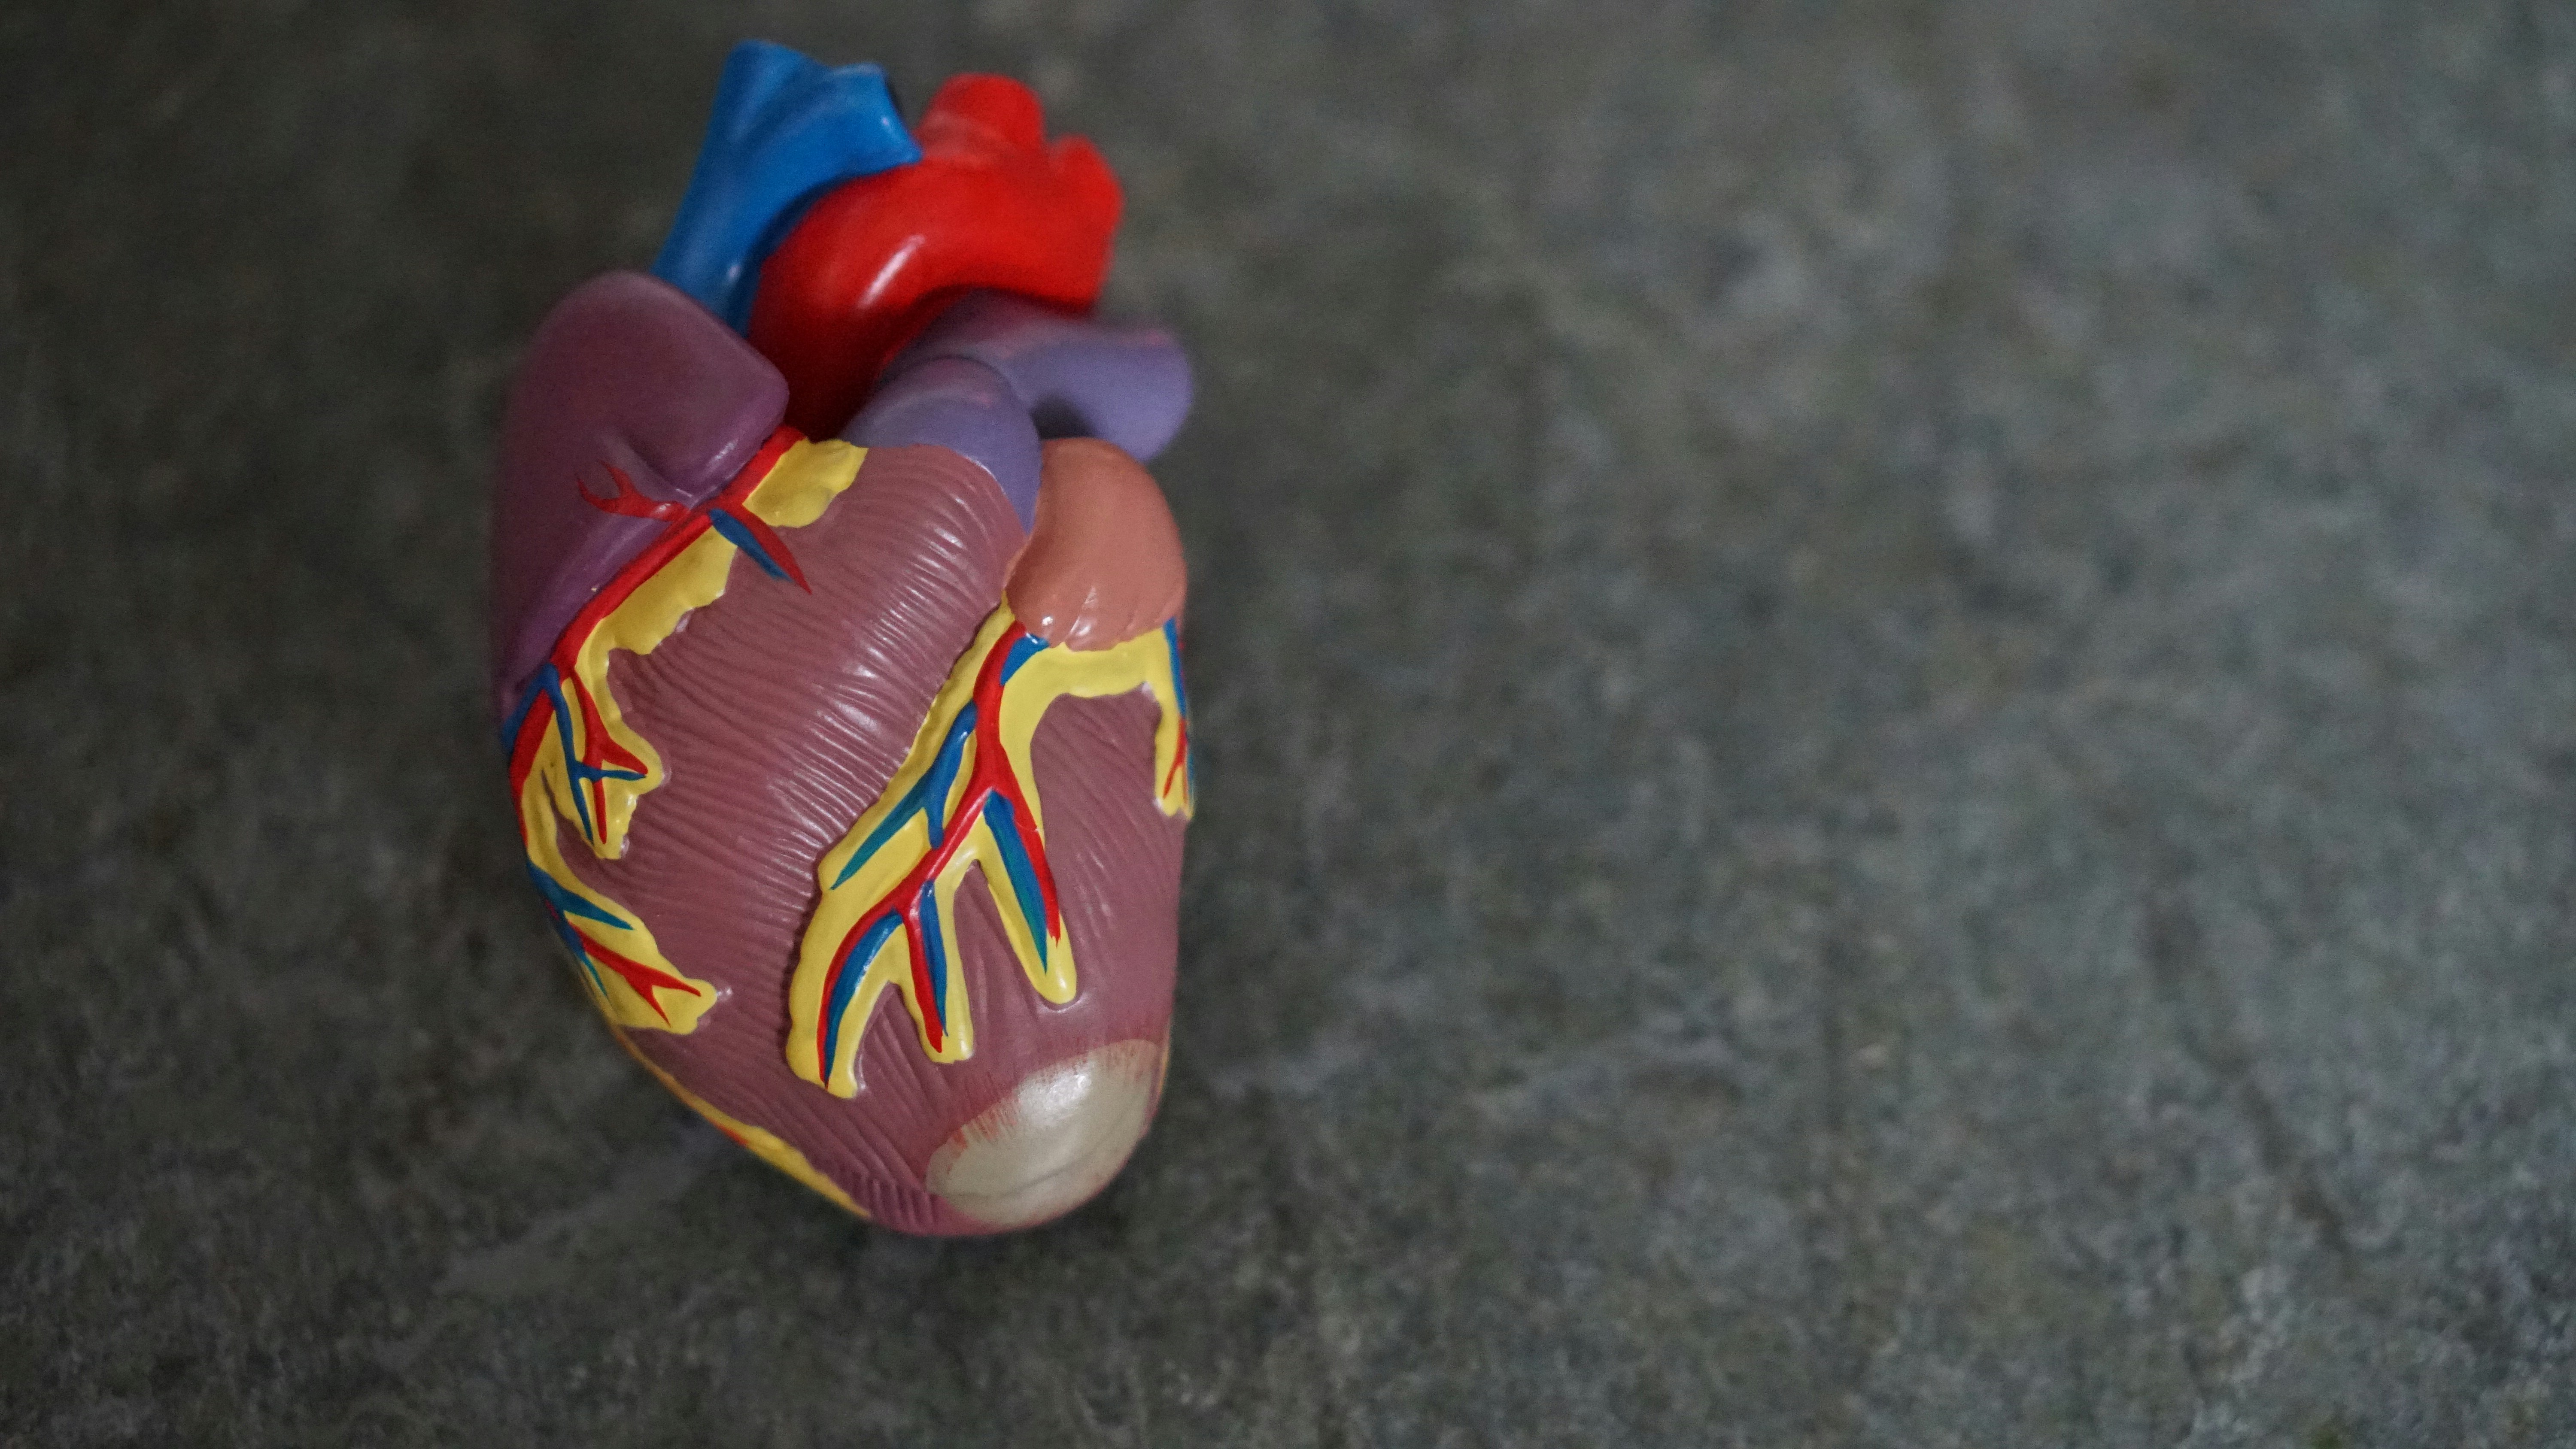 Protezy i zastawki serca - technologia ratująca życie